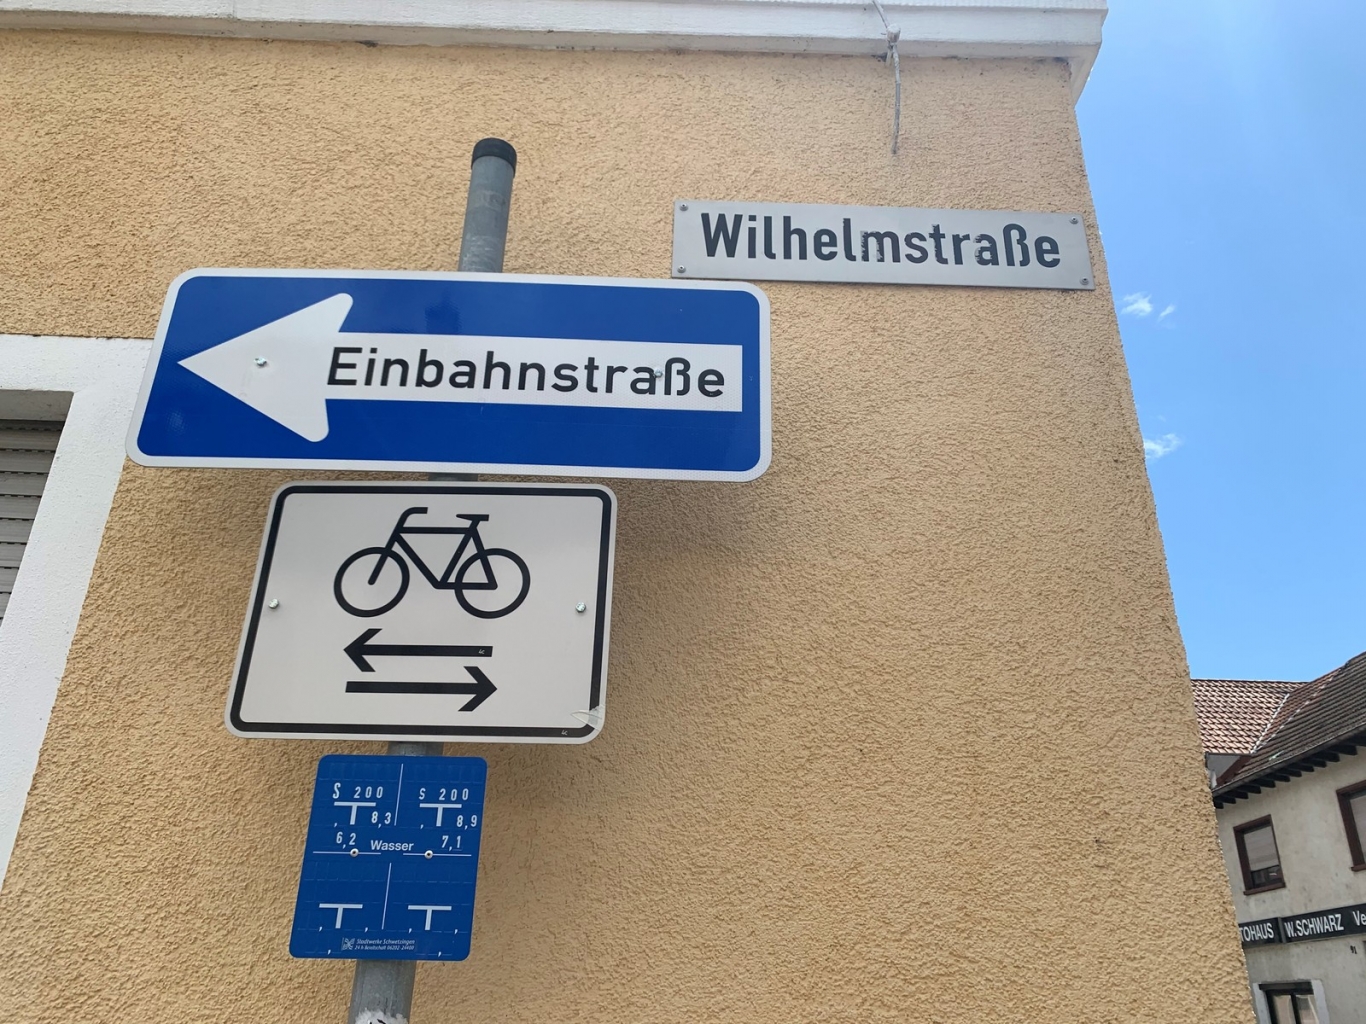 Bild von Wilhelmstraßen- und Einbahnstraßenschild